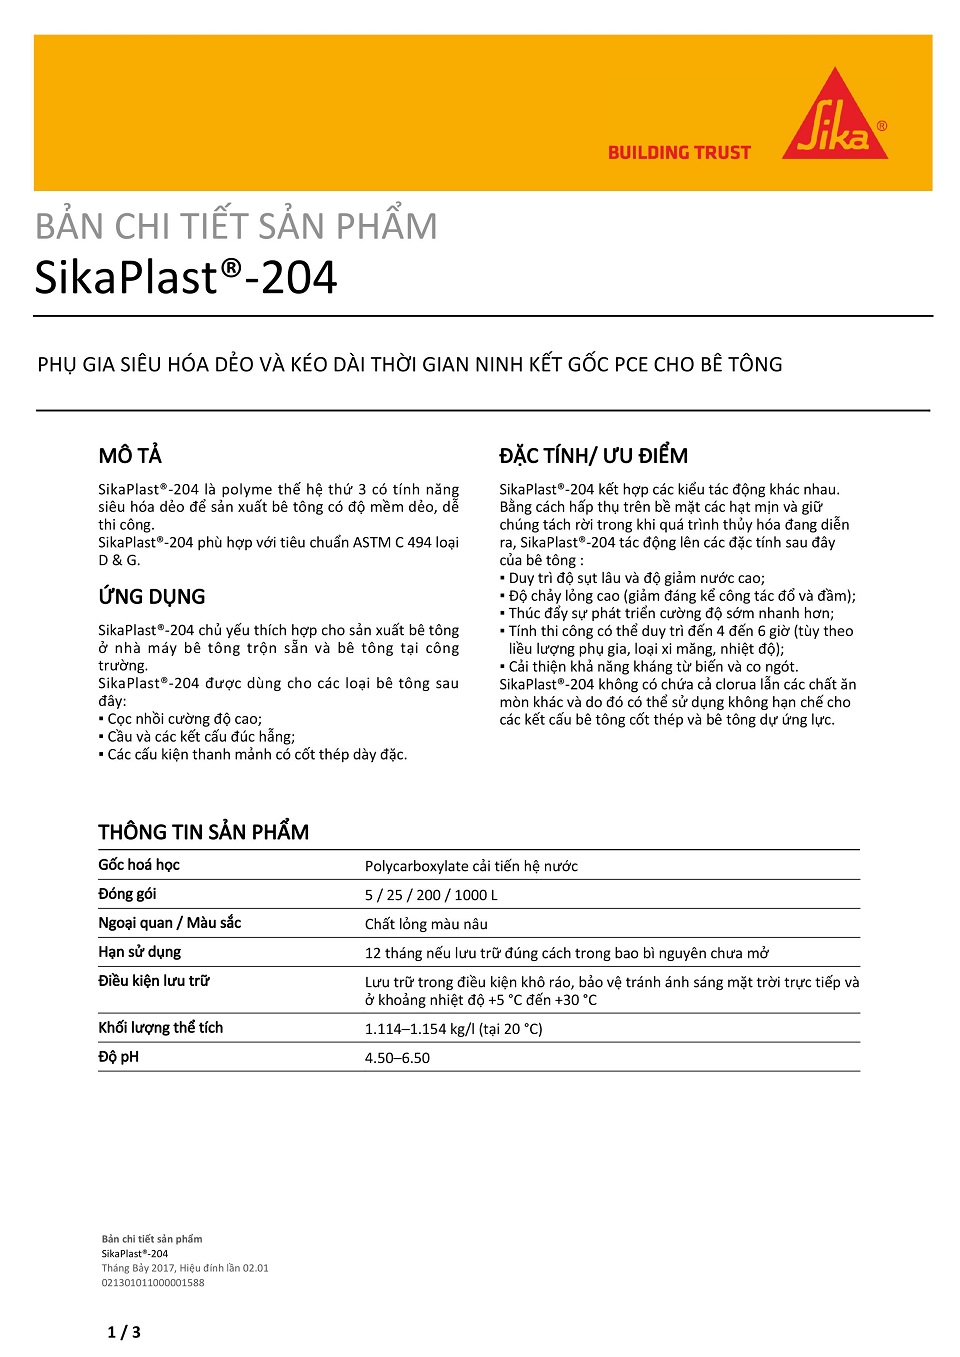 catalog SikaPlast 204, thông tin sản phẩm, thông số kỹ thuật của SikaPlast 204